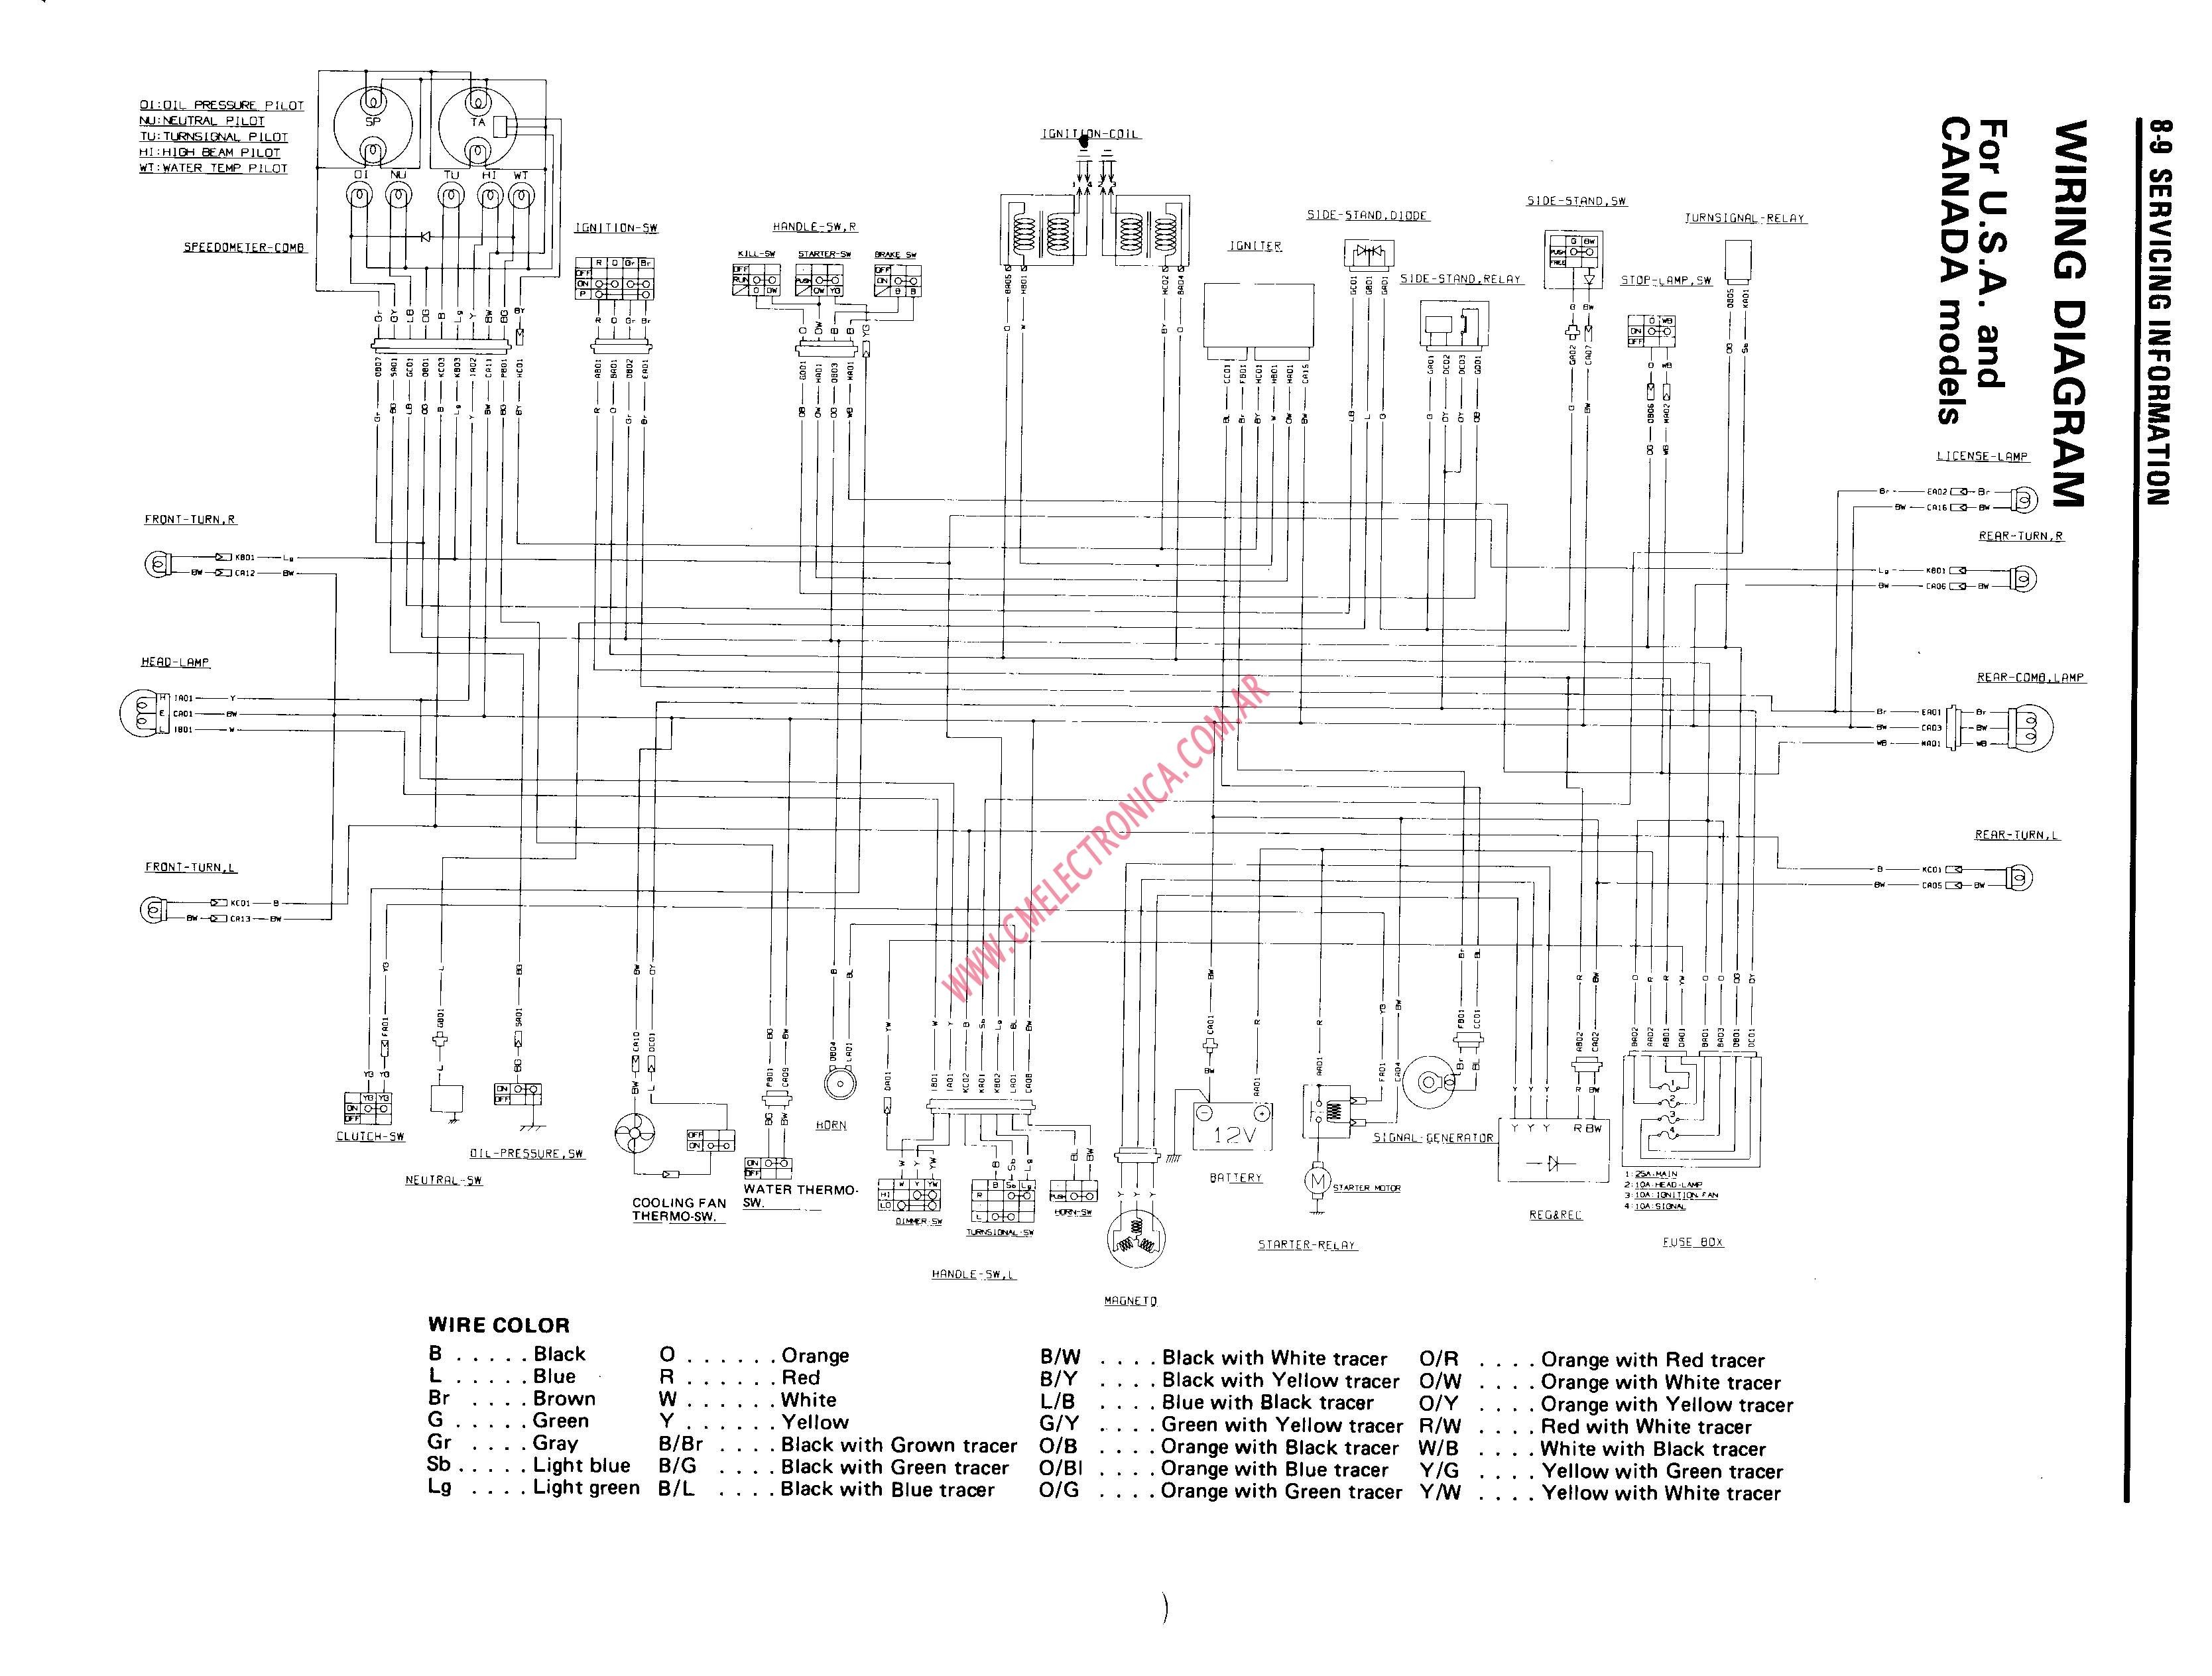 Wiring Diagram For Yamaha Big Bear 400 Wiring Diagrams Favorites 200 Topkick Headlight Switch Wiring Diagram